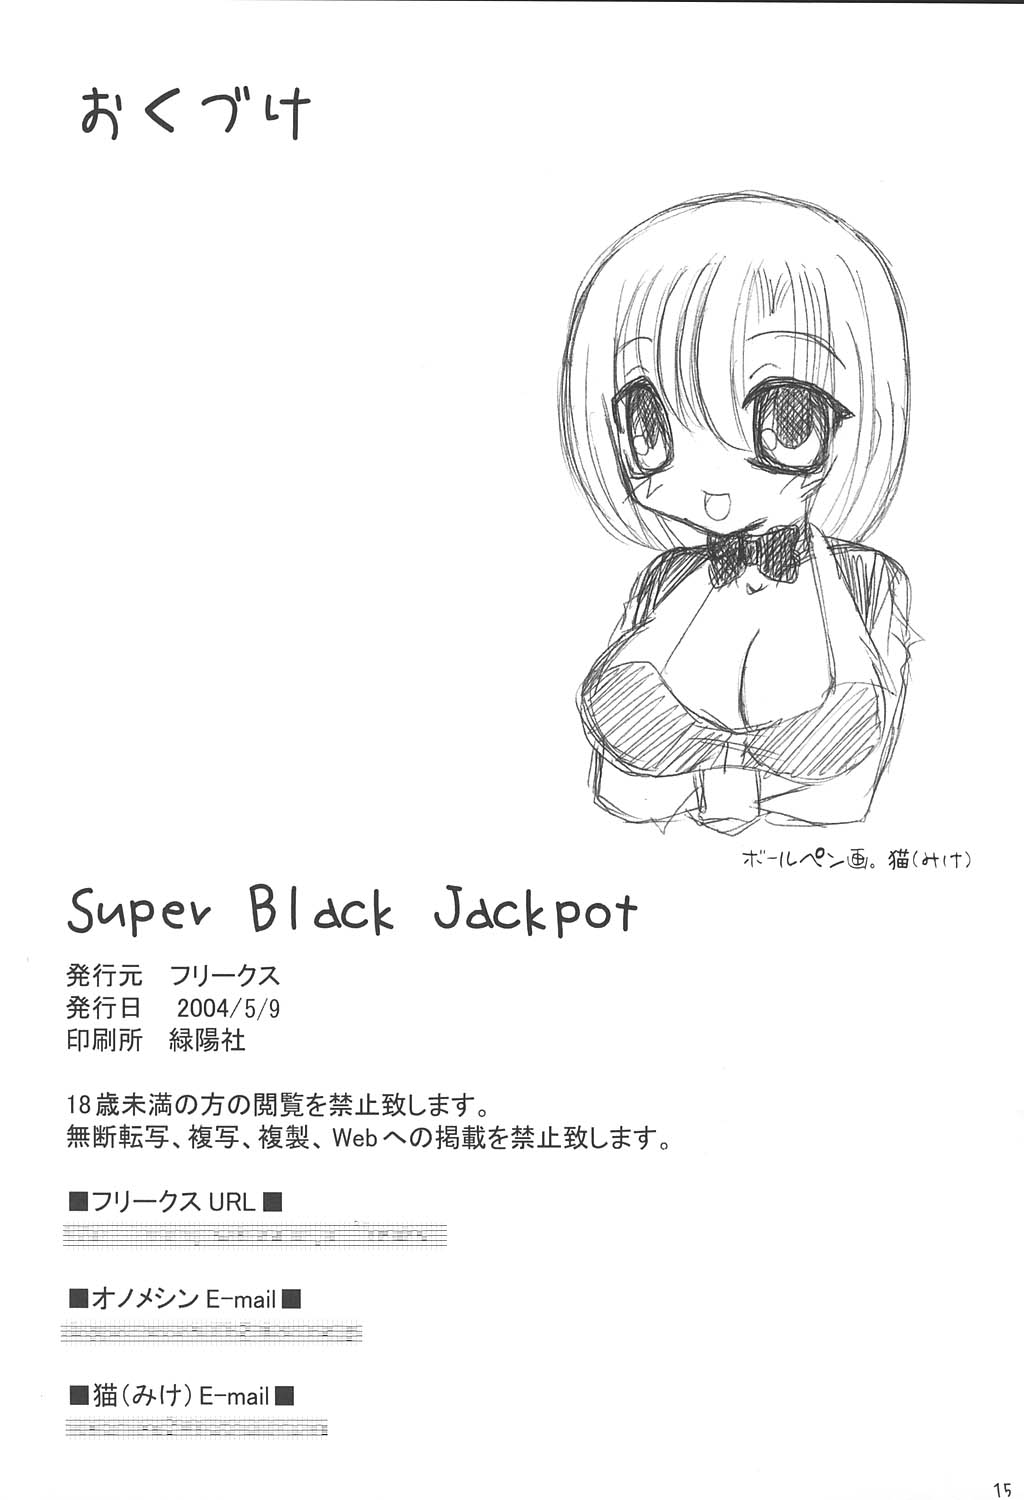 (巨乳っ娘2) [フリークス (猫、オノメシン)] Super Black Jackpot (スーパーブラックジャック)